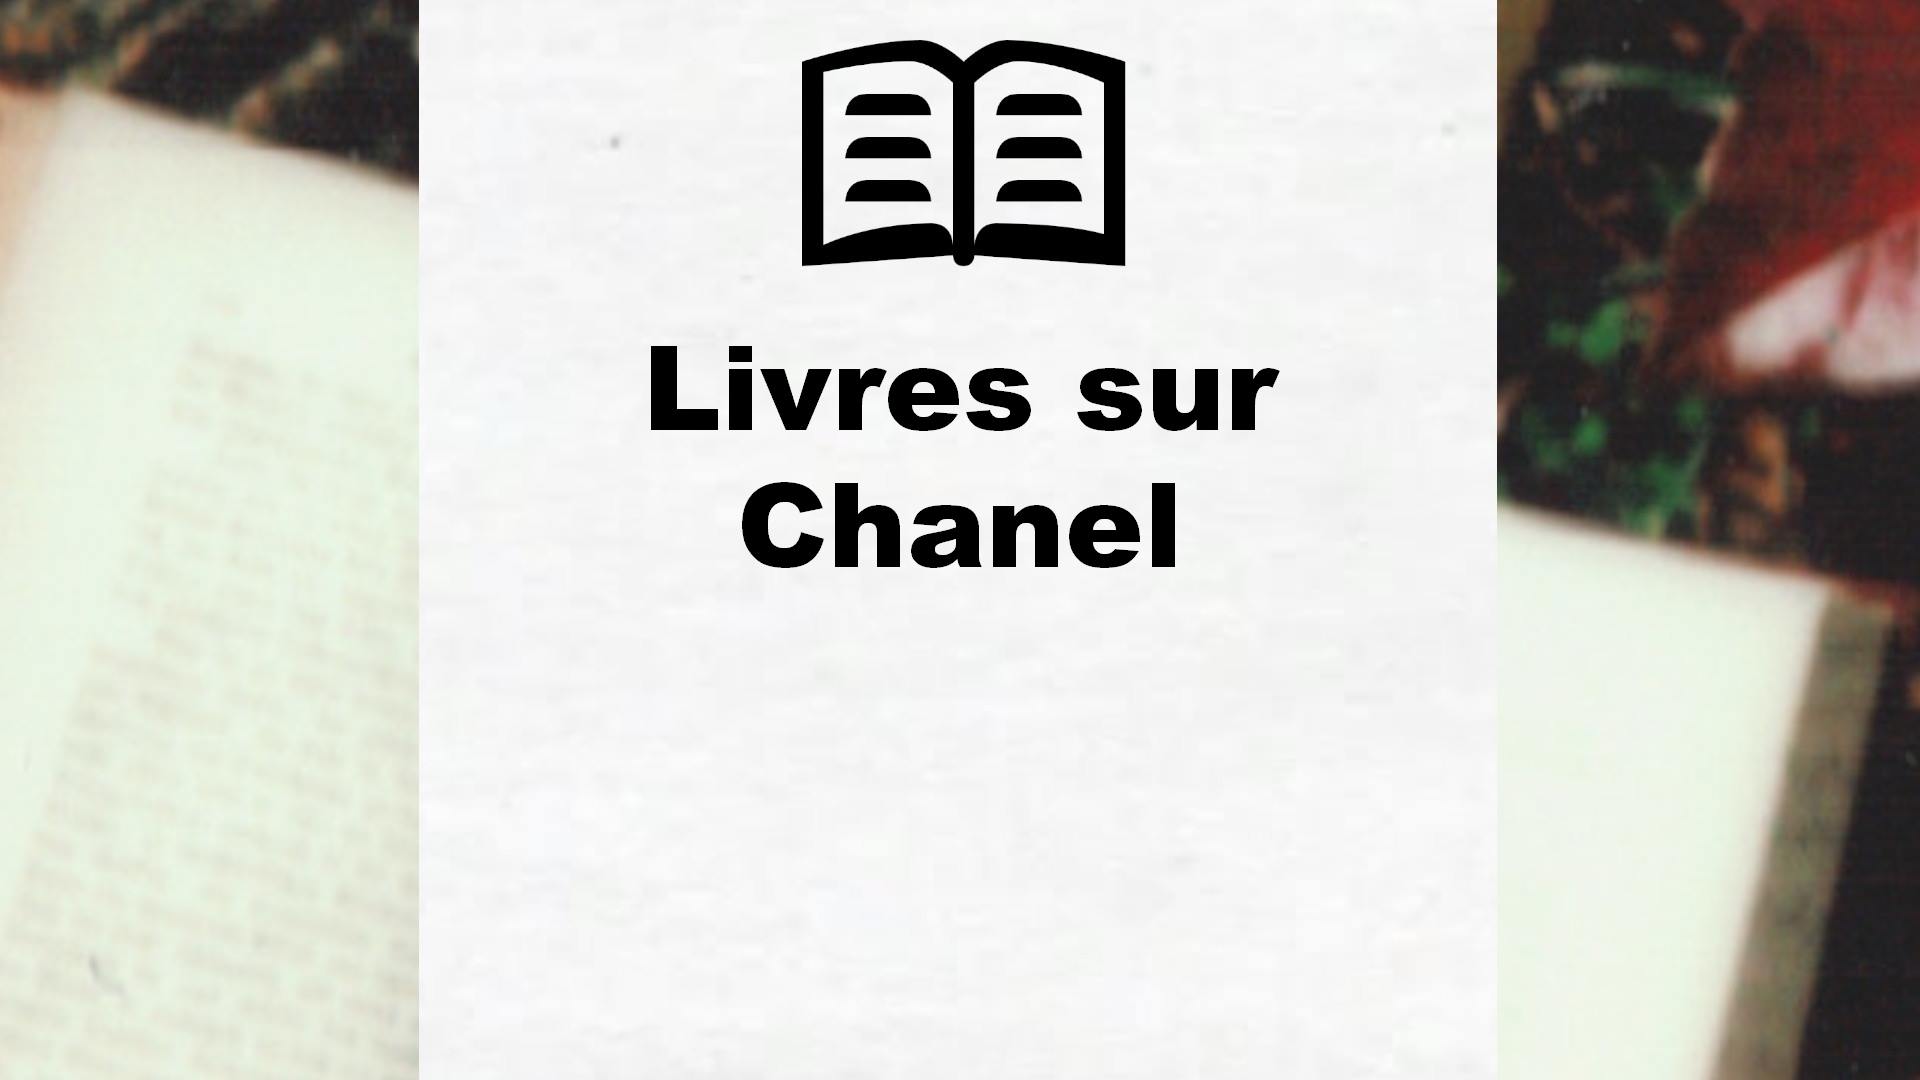 Livres sur Chanel